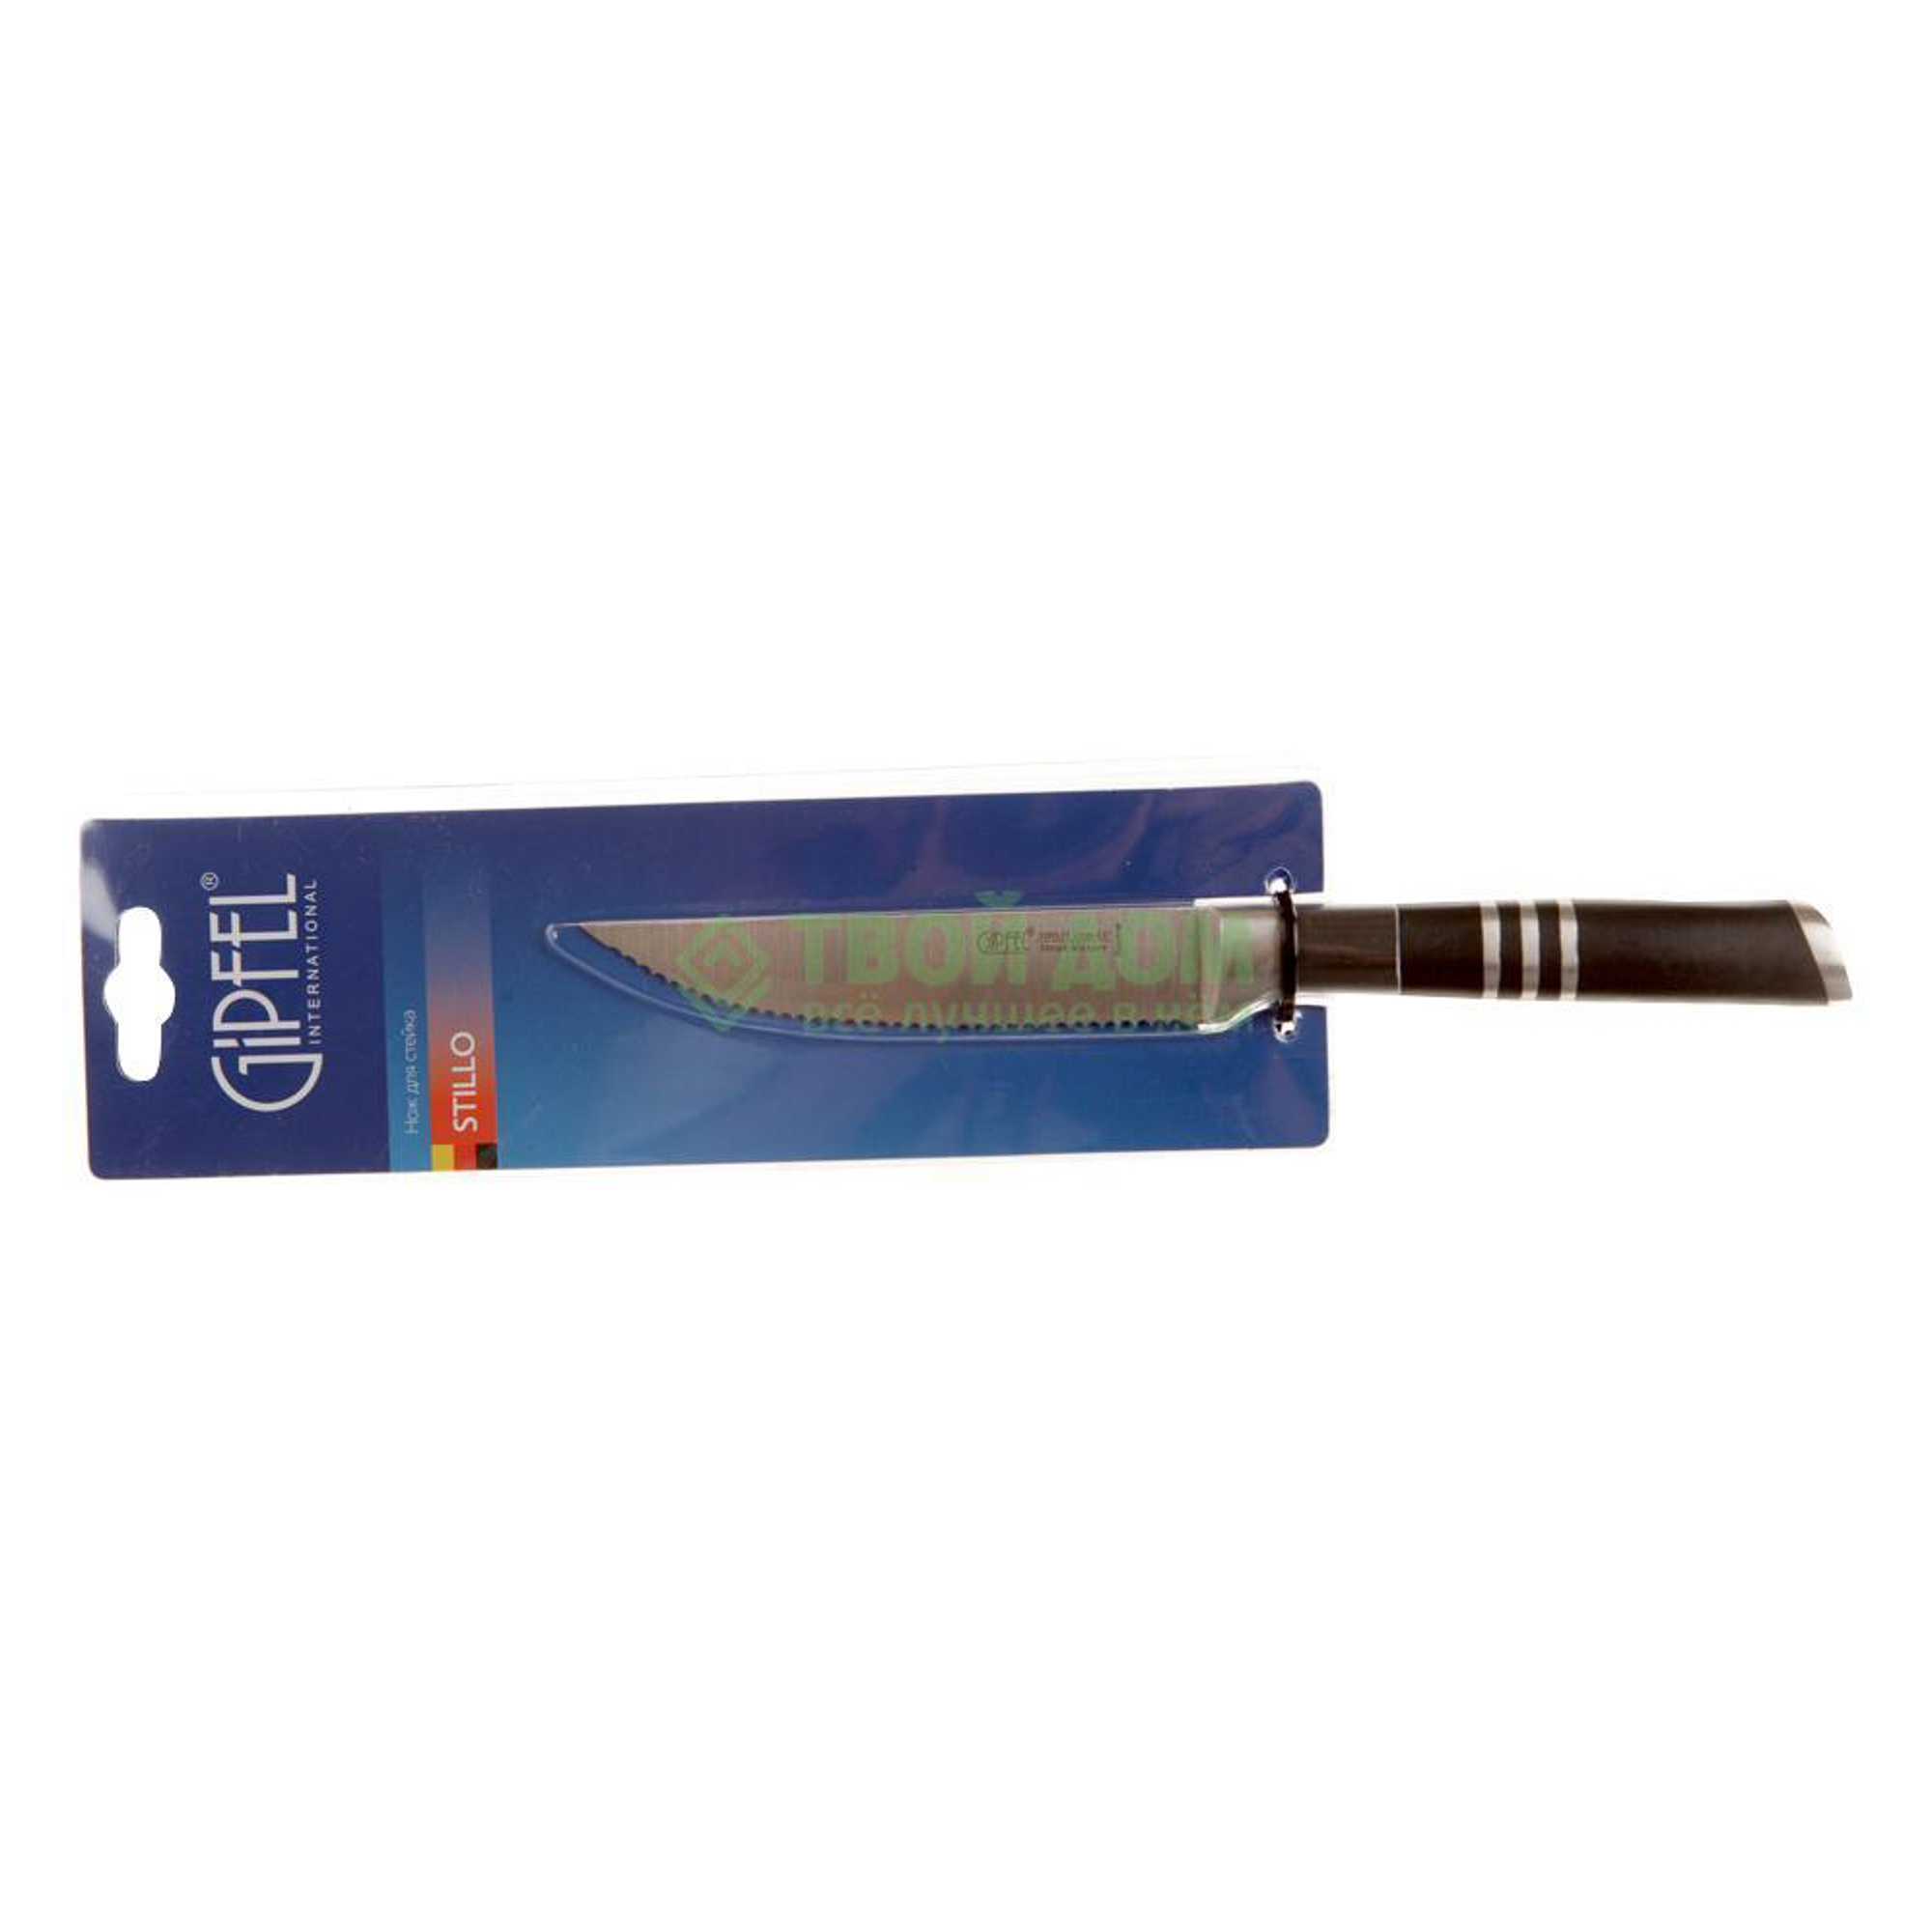 Нож для стейка Gipfel Stillo 11,5 см нержавеющая сталь, цвет черный - фото 1